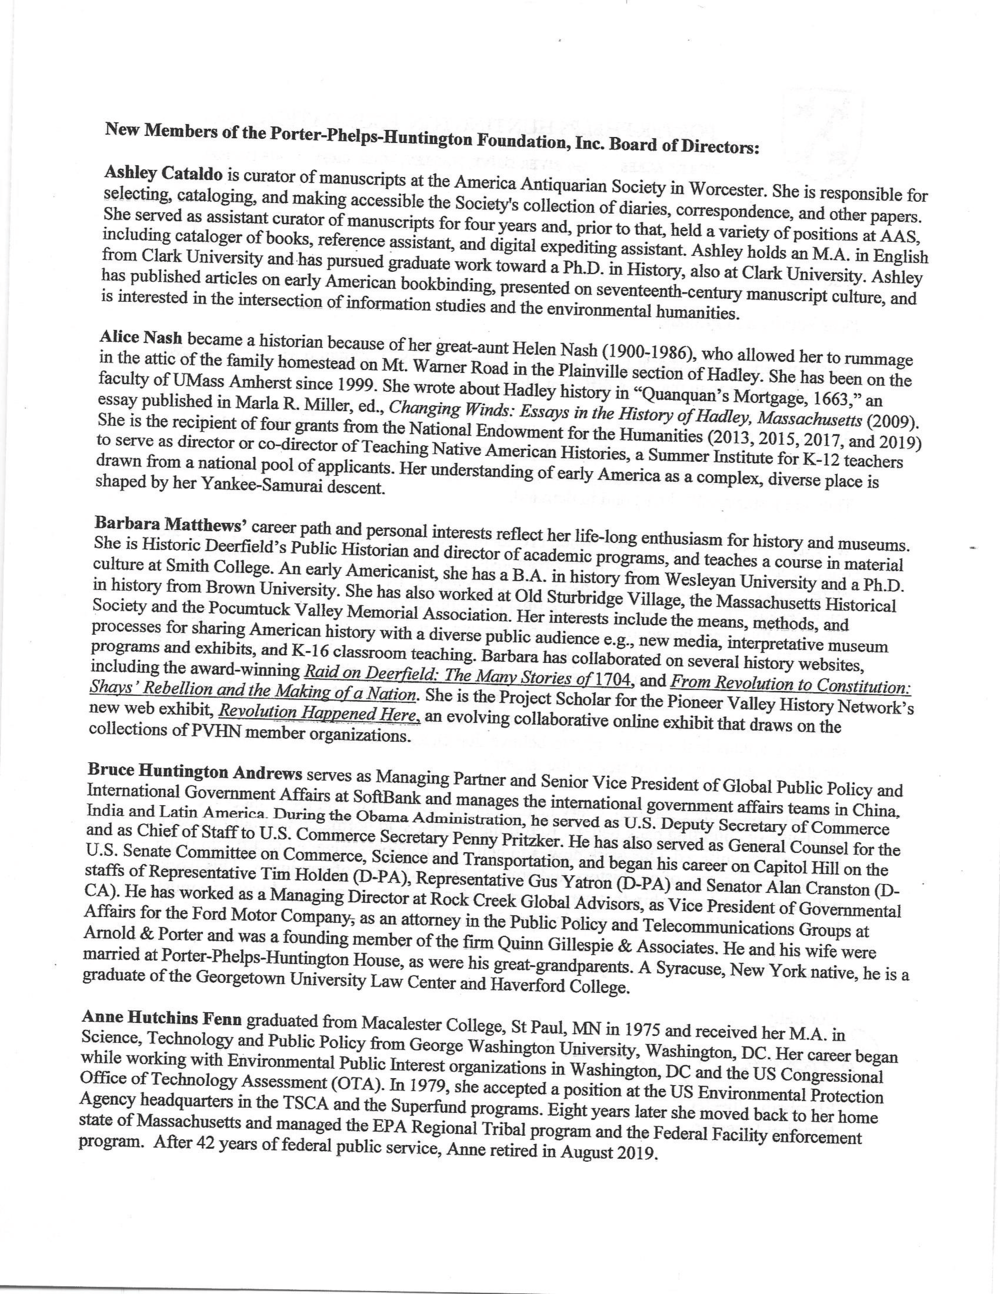 PPH Member Letter June 2021 on letterhead-2.png